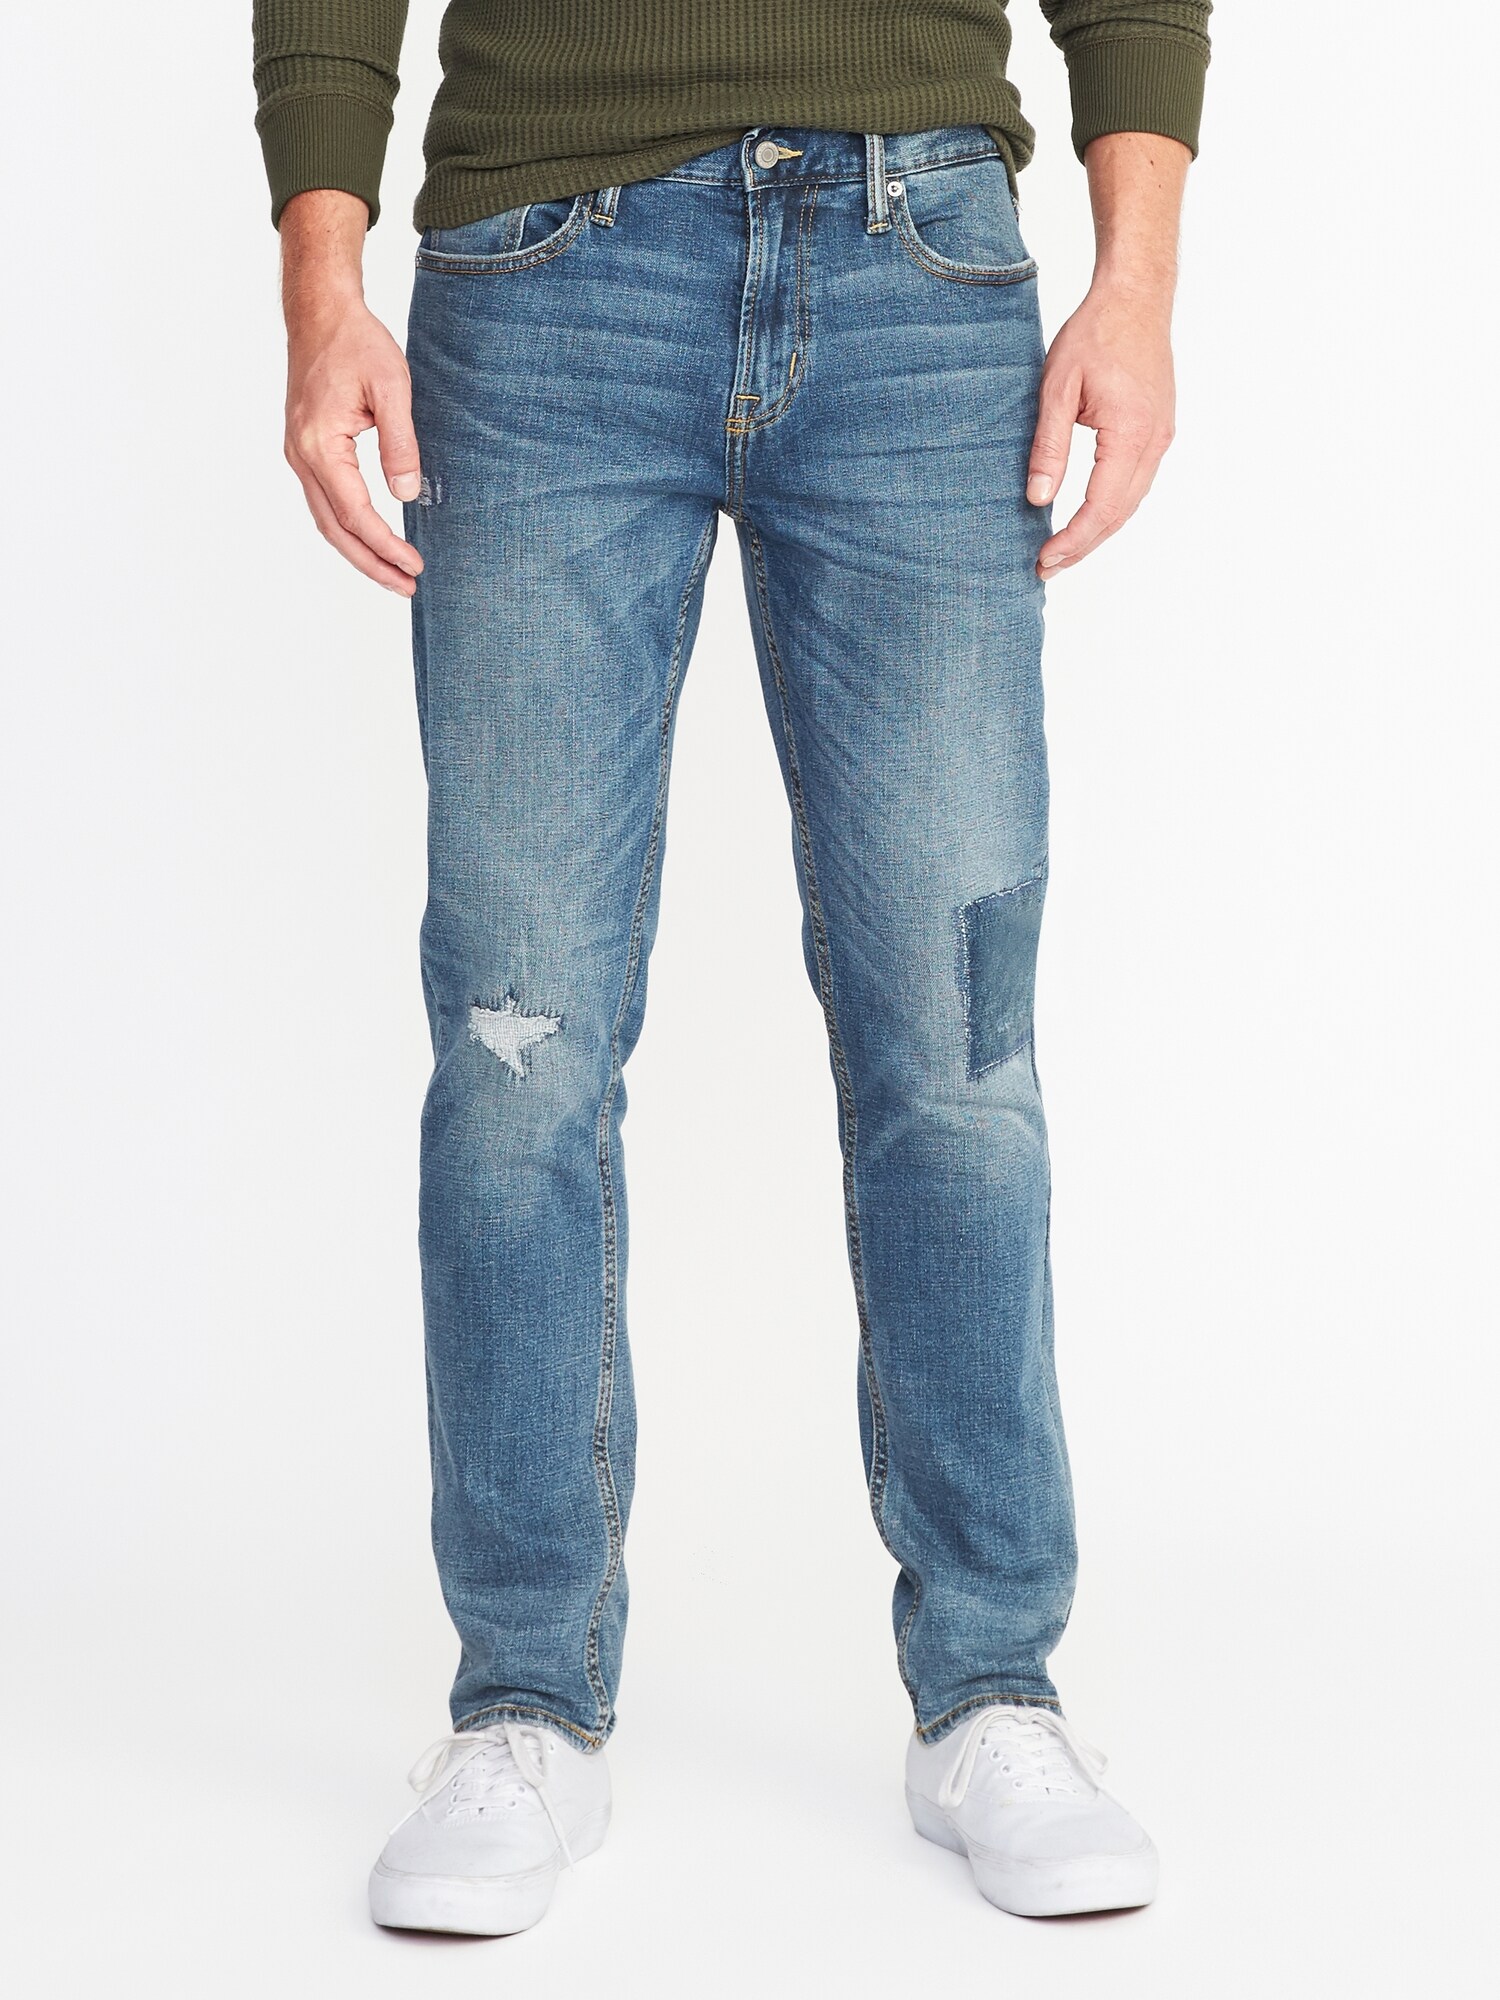 Slim Built-In Flex Distressed Jeans For Men | Old Navy